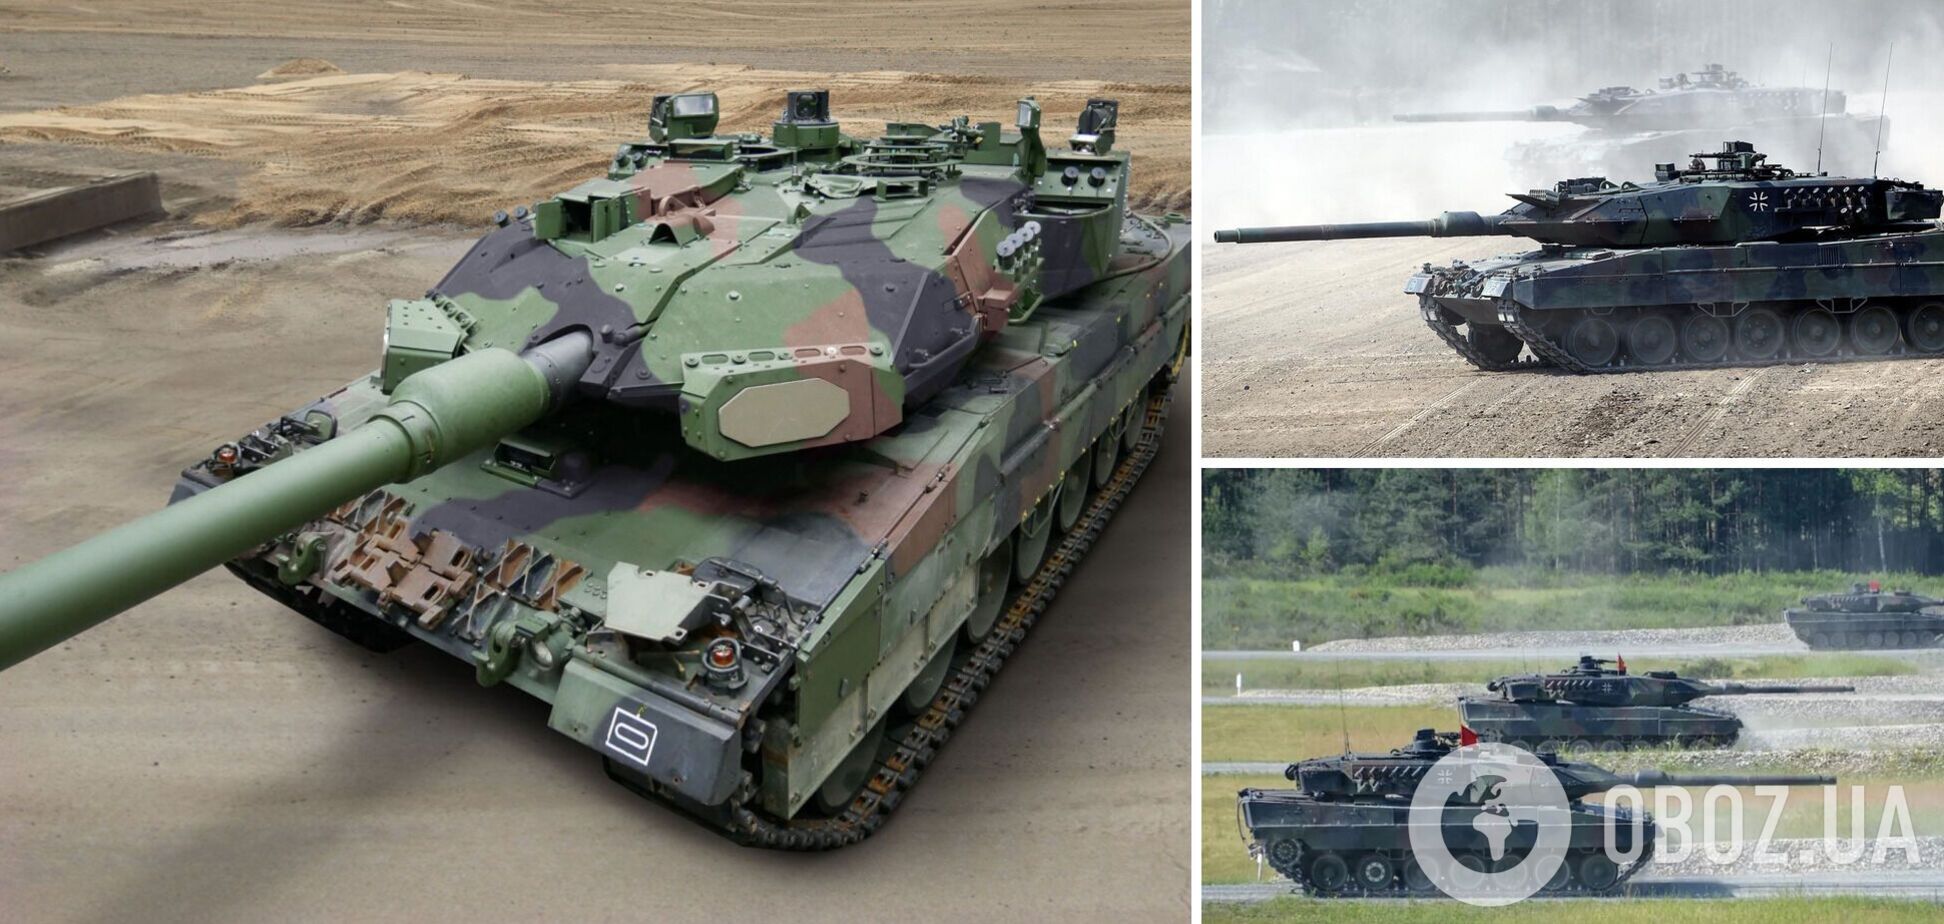 Германия смогла бы поставить 10-15 танков Leopard 2 Украине уже в этом году – Frankfurter Allgemeine Zeitung